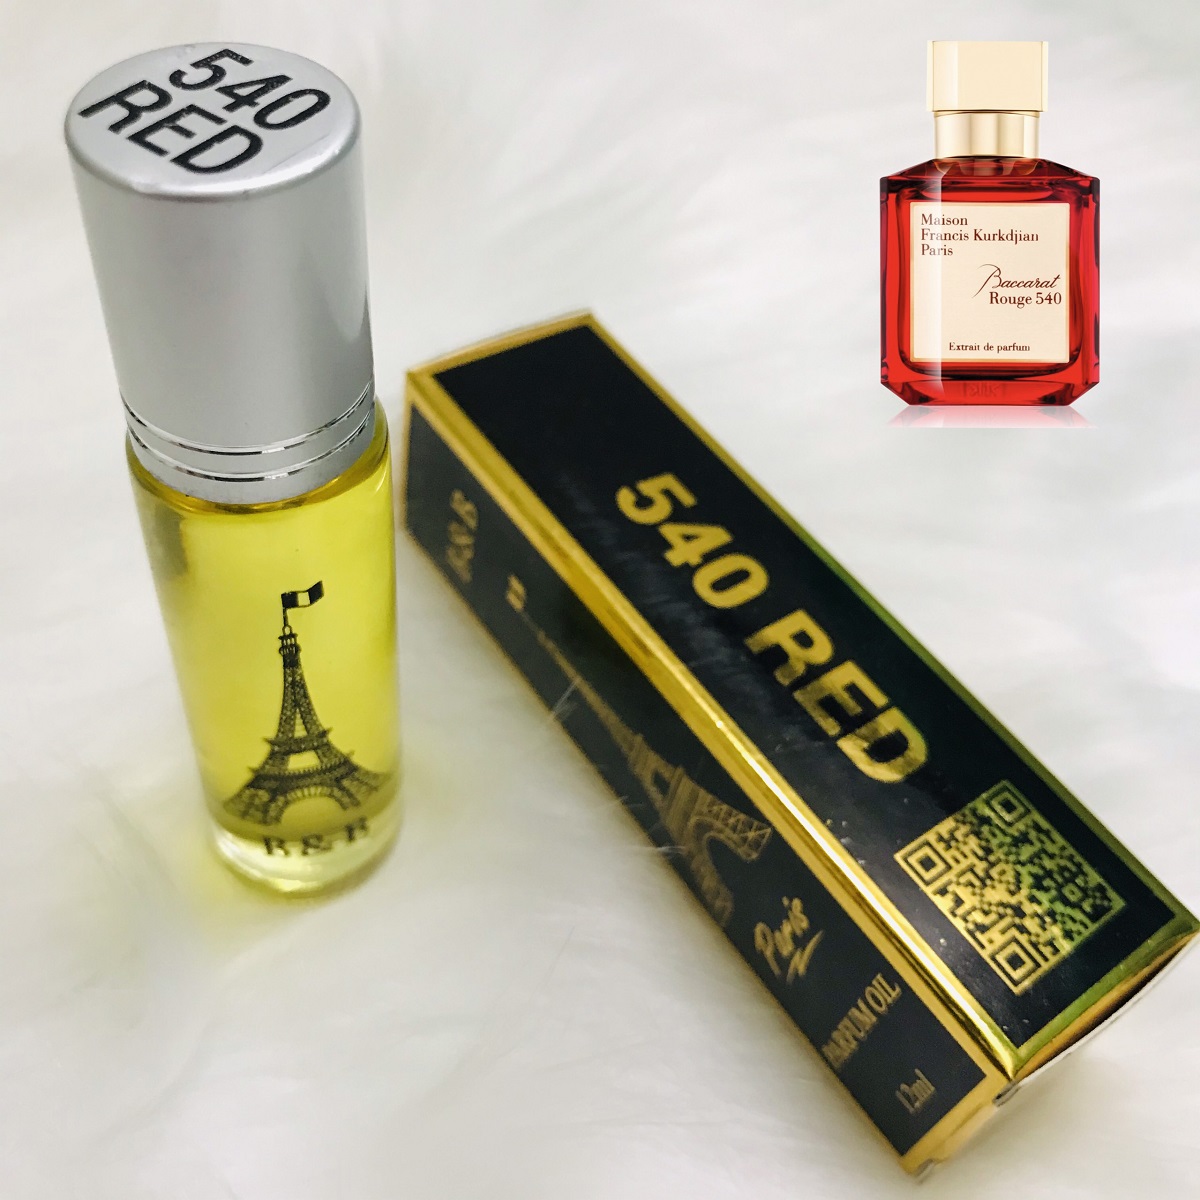 Tinh Dầu Nước Hoa Pháp B&B lăn 10ml lưu hương 14 tiếng, gồm 15 mùi nước hoa nam nữ unisex cao cấp, thơm lâu tỏa hương xa 2m